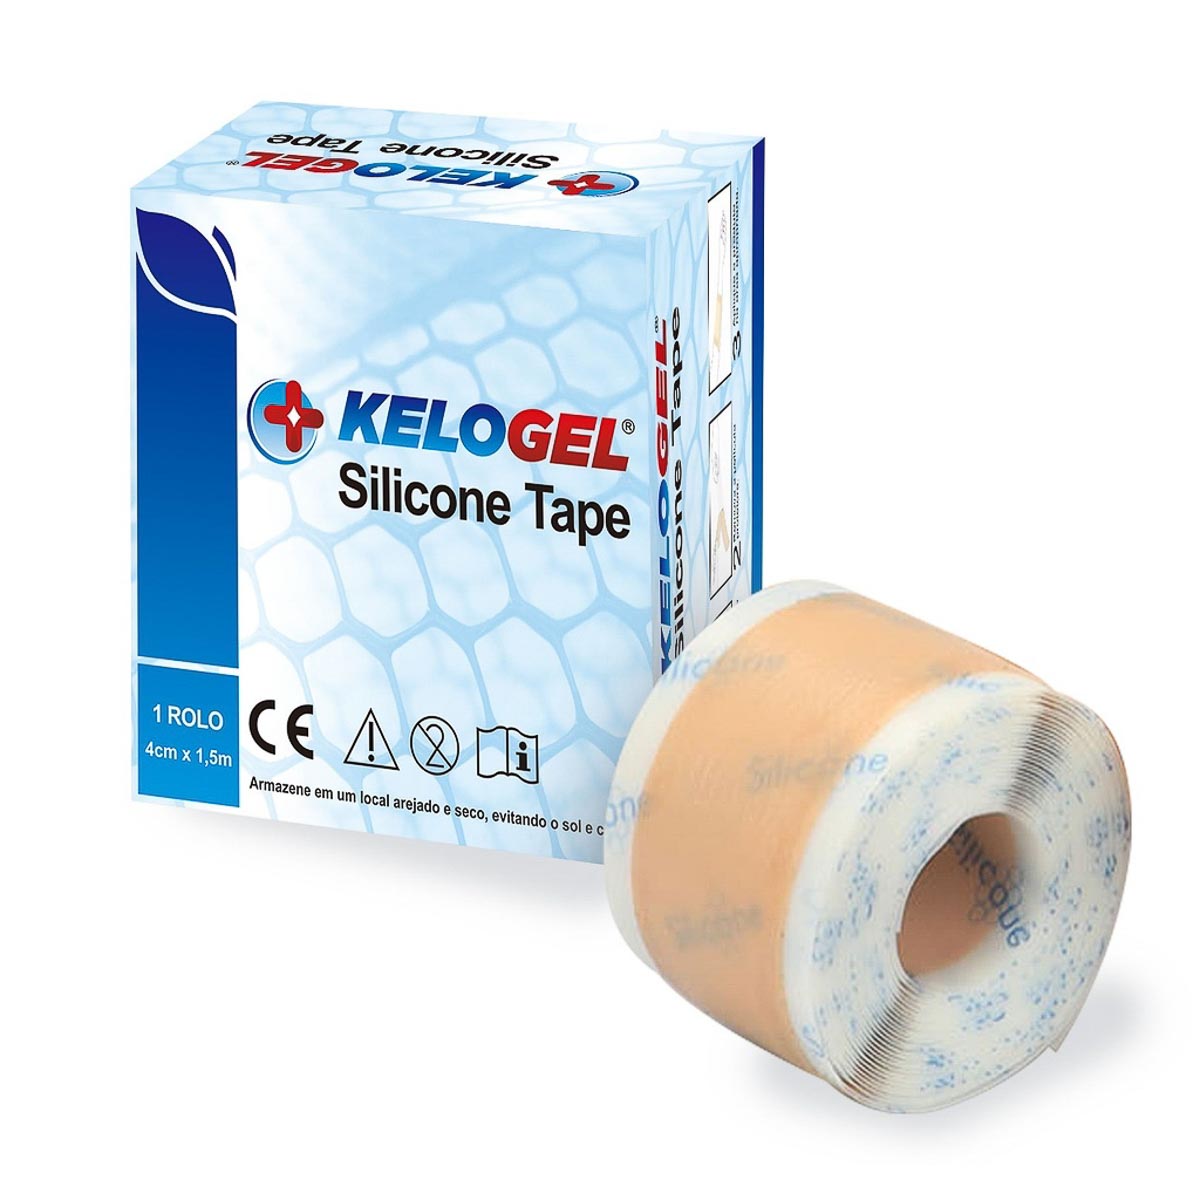 Rolo de fita de silicone tape Kelogel médico hospitalar 150x4cm fixação de sondas, tratamento cicatriz não hipertróficas  - Cinta se Nova